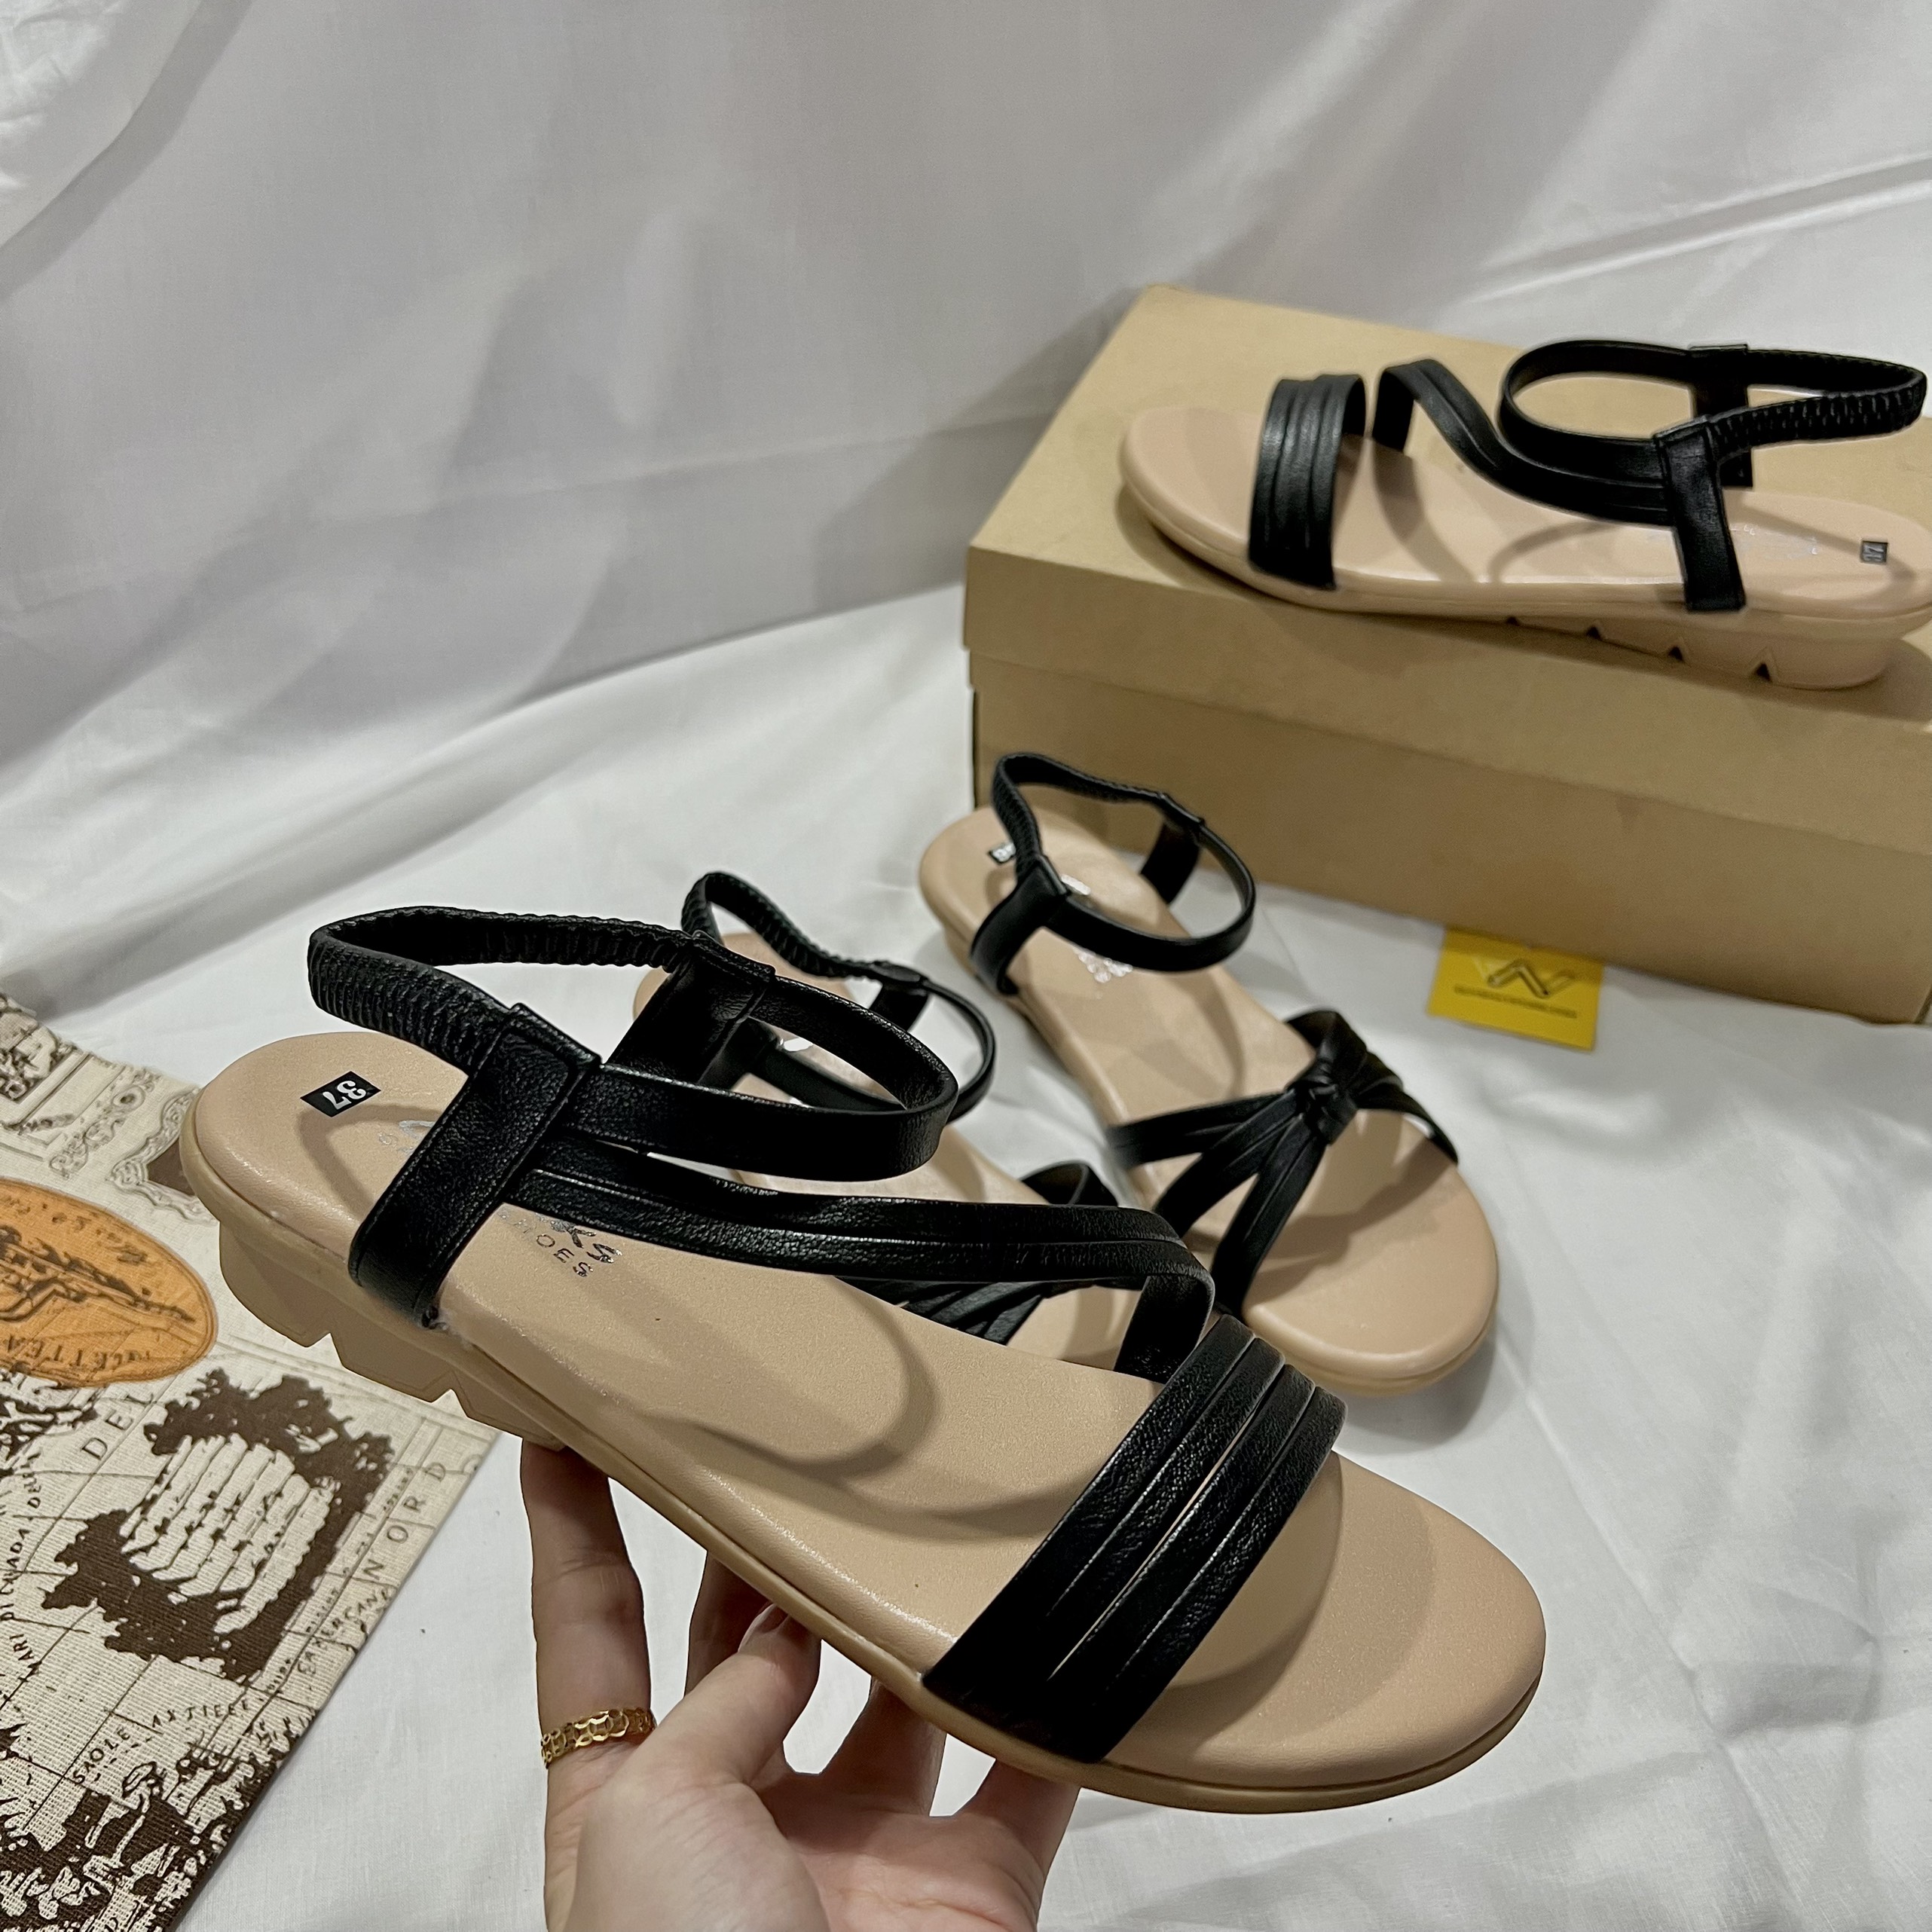 Giày Sandal Nữ Quai Ngang Dây Chéo Cao 2cmBánh Mì Duy Nhật Store Phối Khóa Da Mờ Học Sinh Đi Học Đẹp Đơn Giản Bền Đế Cao